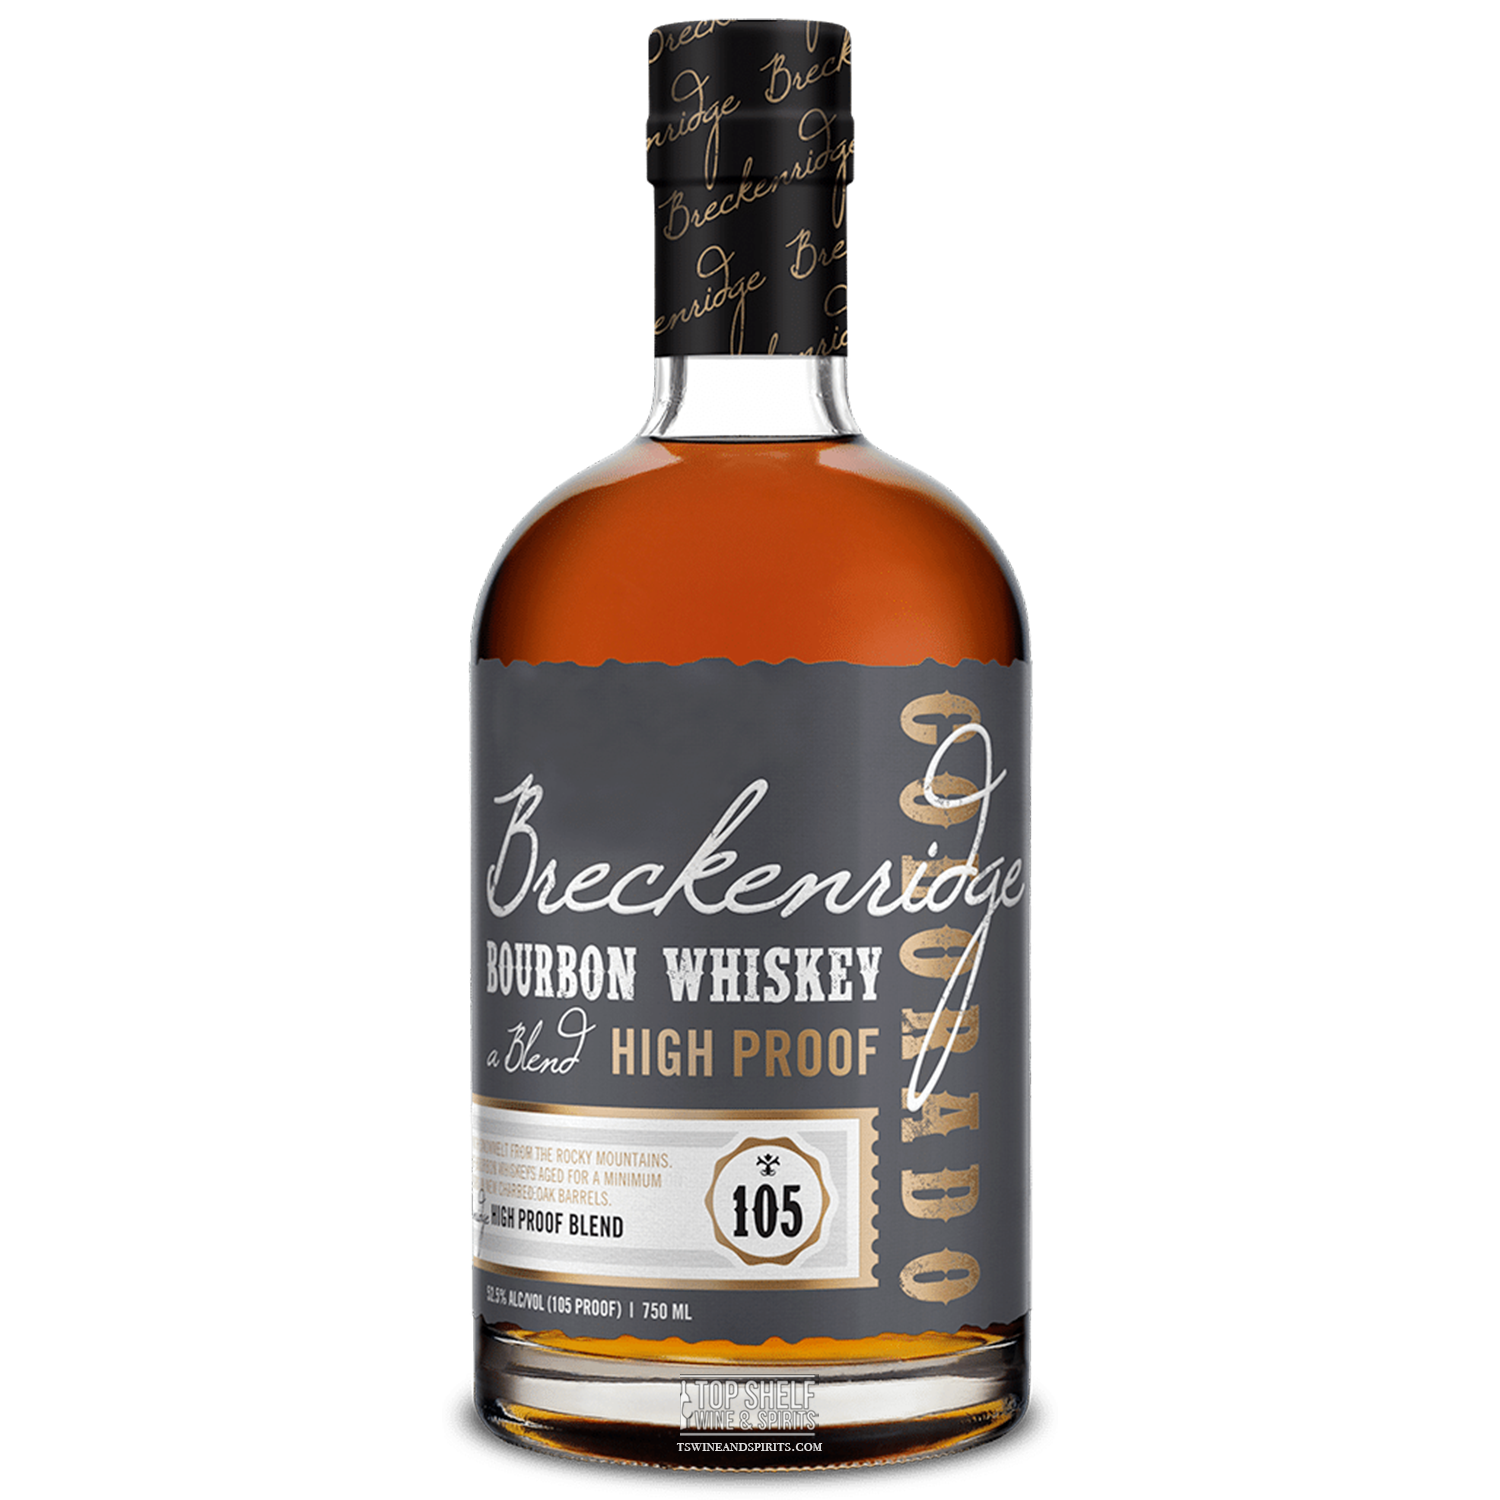 Breckenridge Distiller's High Proof Blend Bourbon